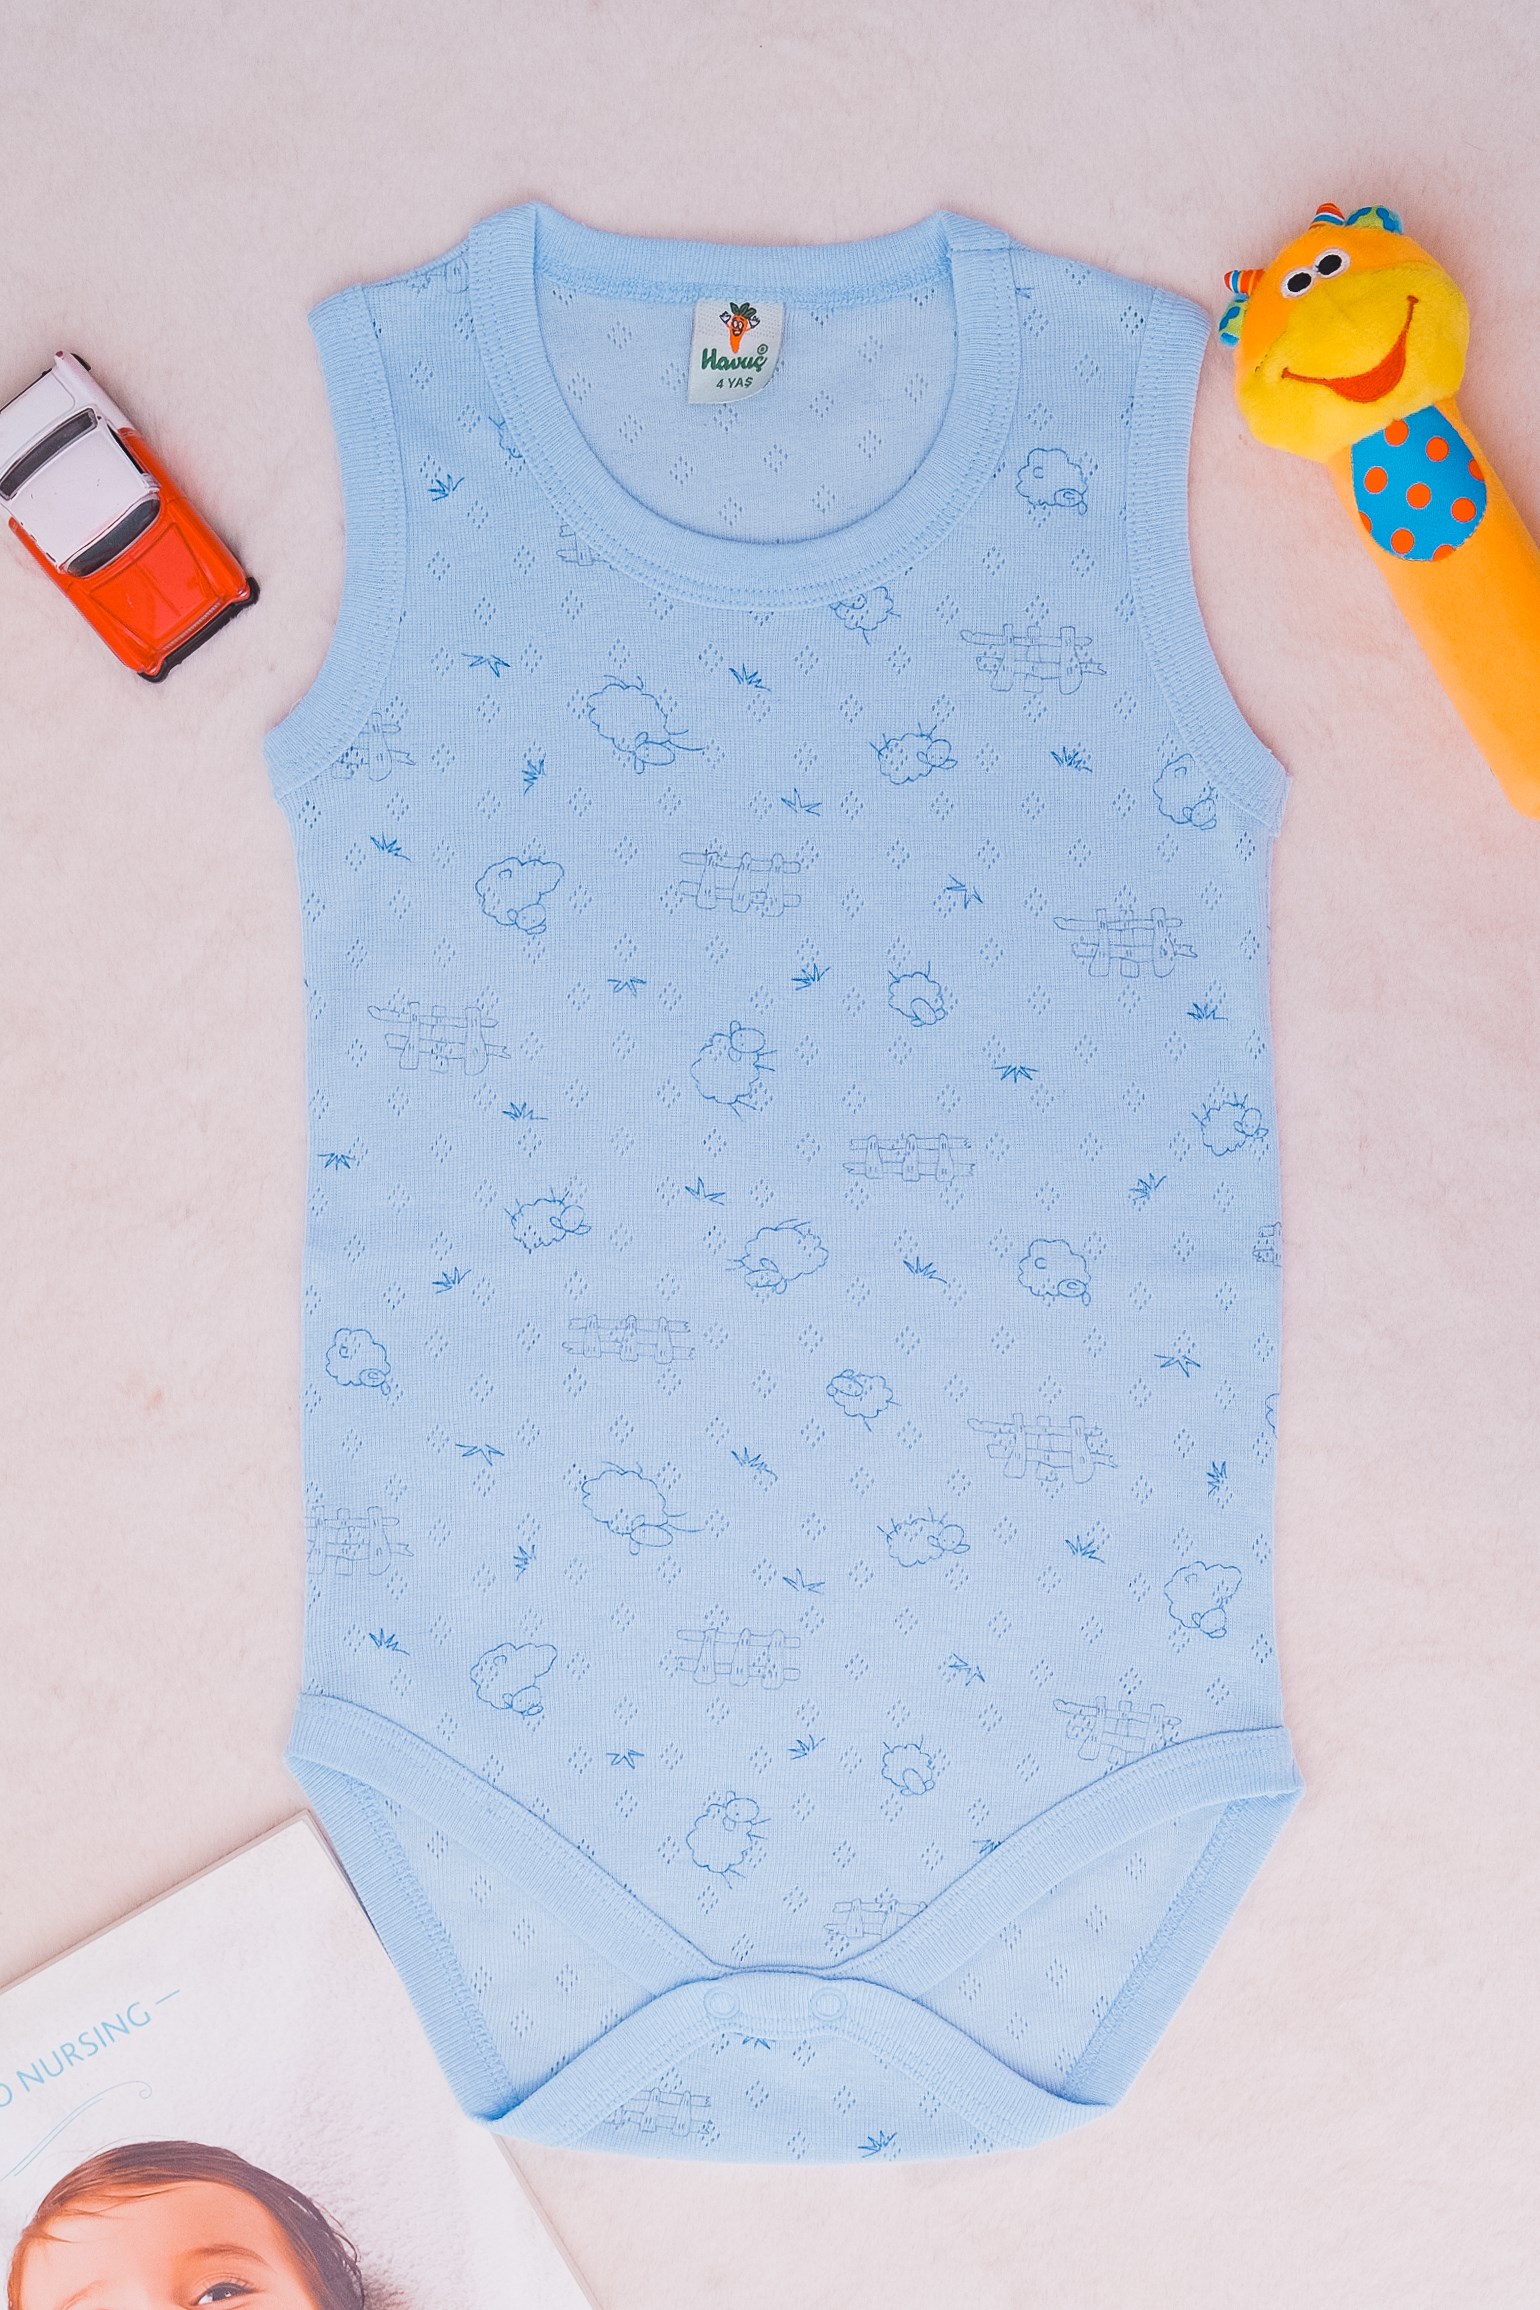 Havuç BDY00201  Bebe Kuzu Desenli Çıtçıtlı Lüks Atlet badi Mavi